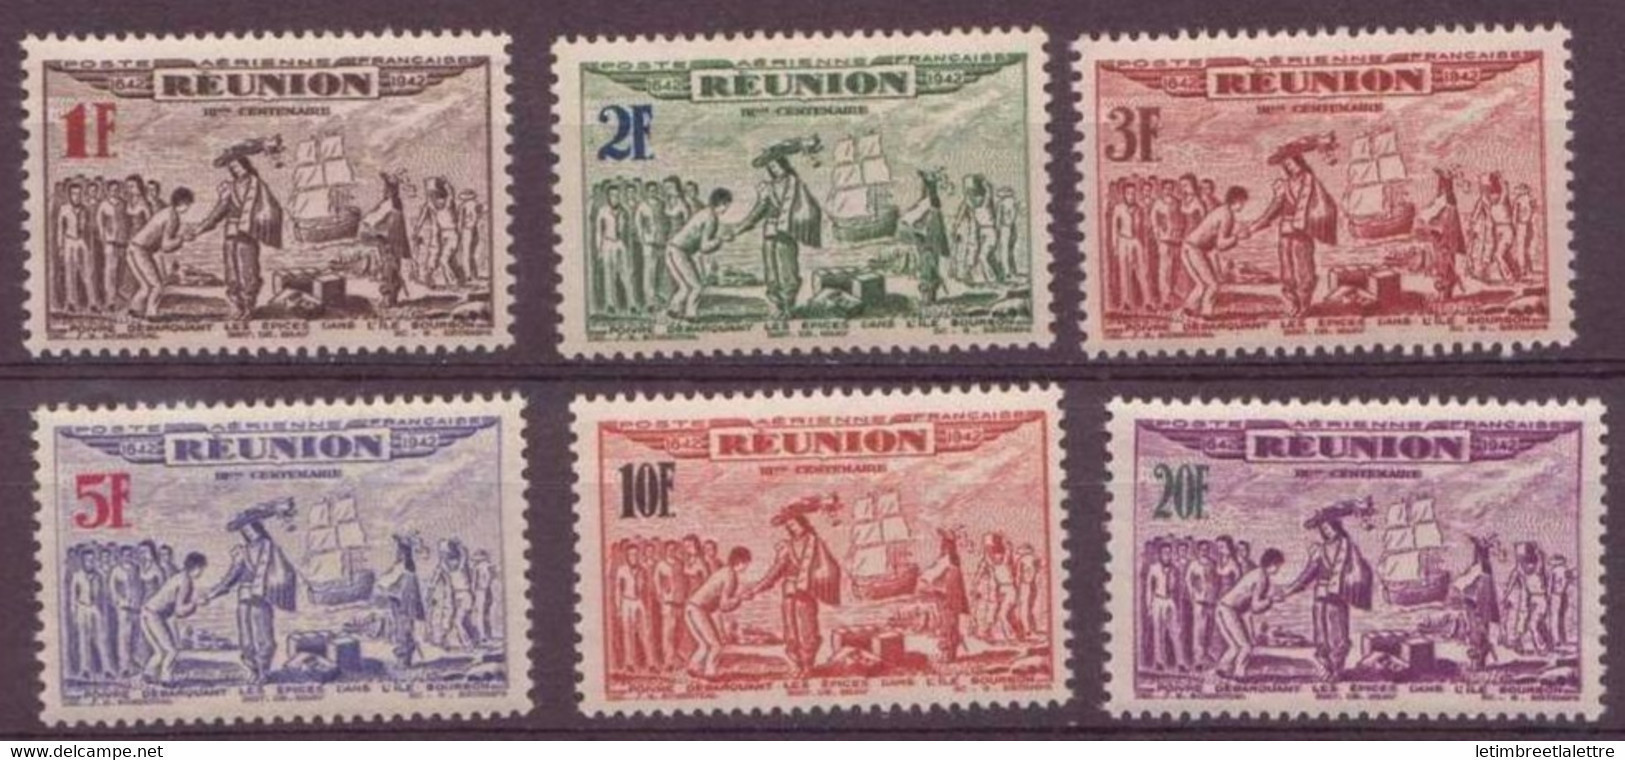 Réunion - Poste Aérienne - YT N° 18 à 23 ** - Neuf Sans Charnière - 1943 - Posta Aerea